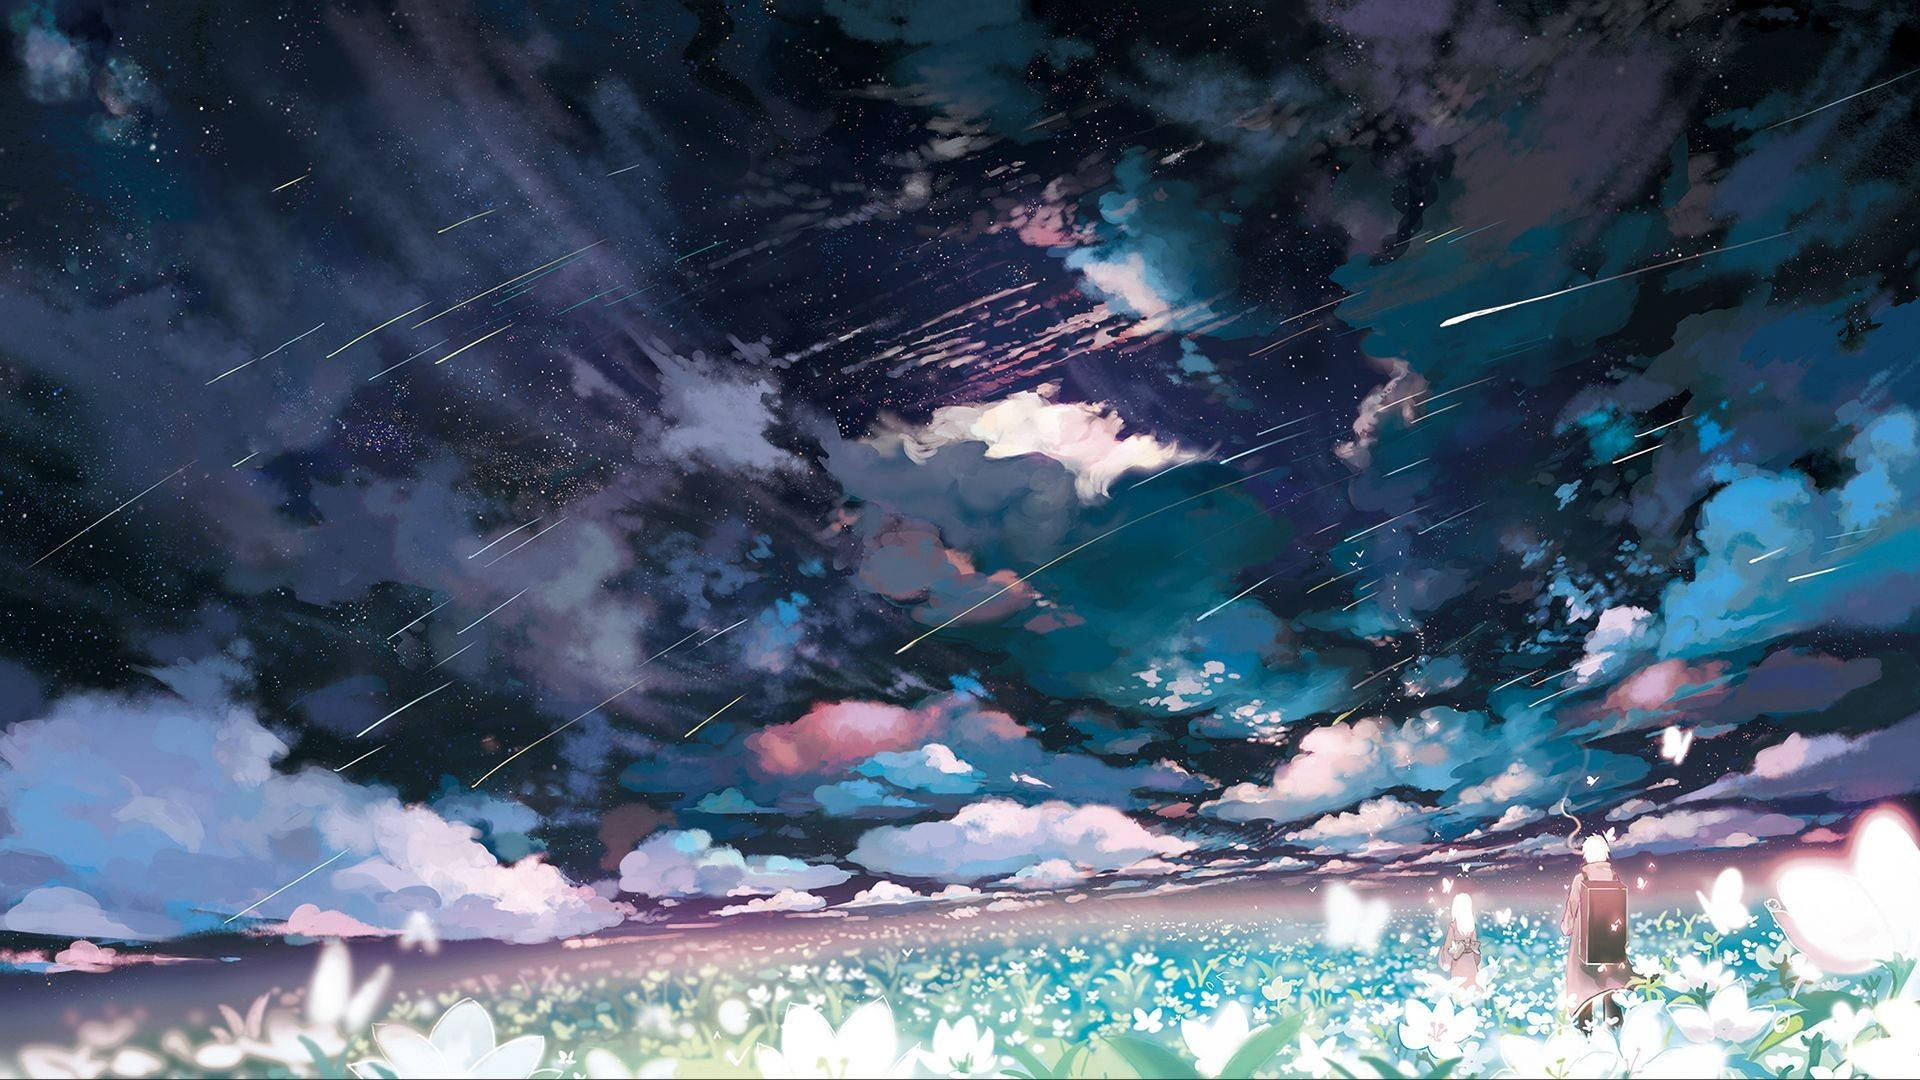 Star-Crossed Field Aesthetic Anime Art Desktop Wallpaper